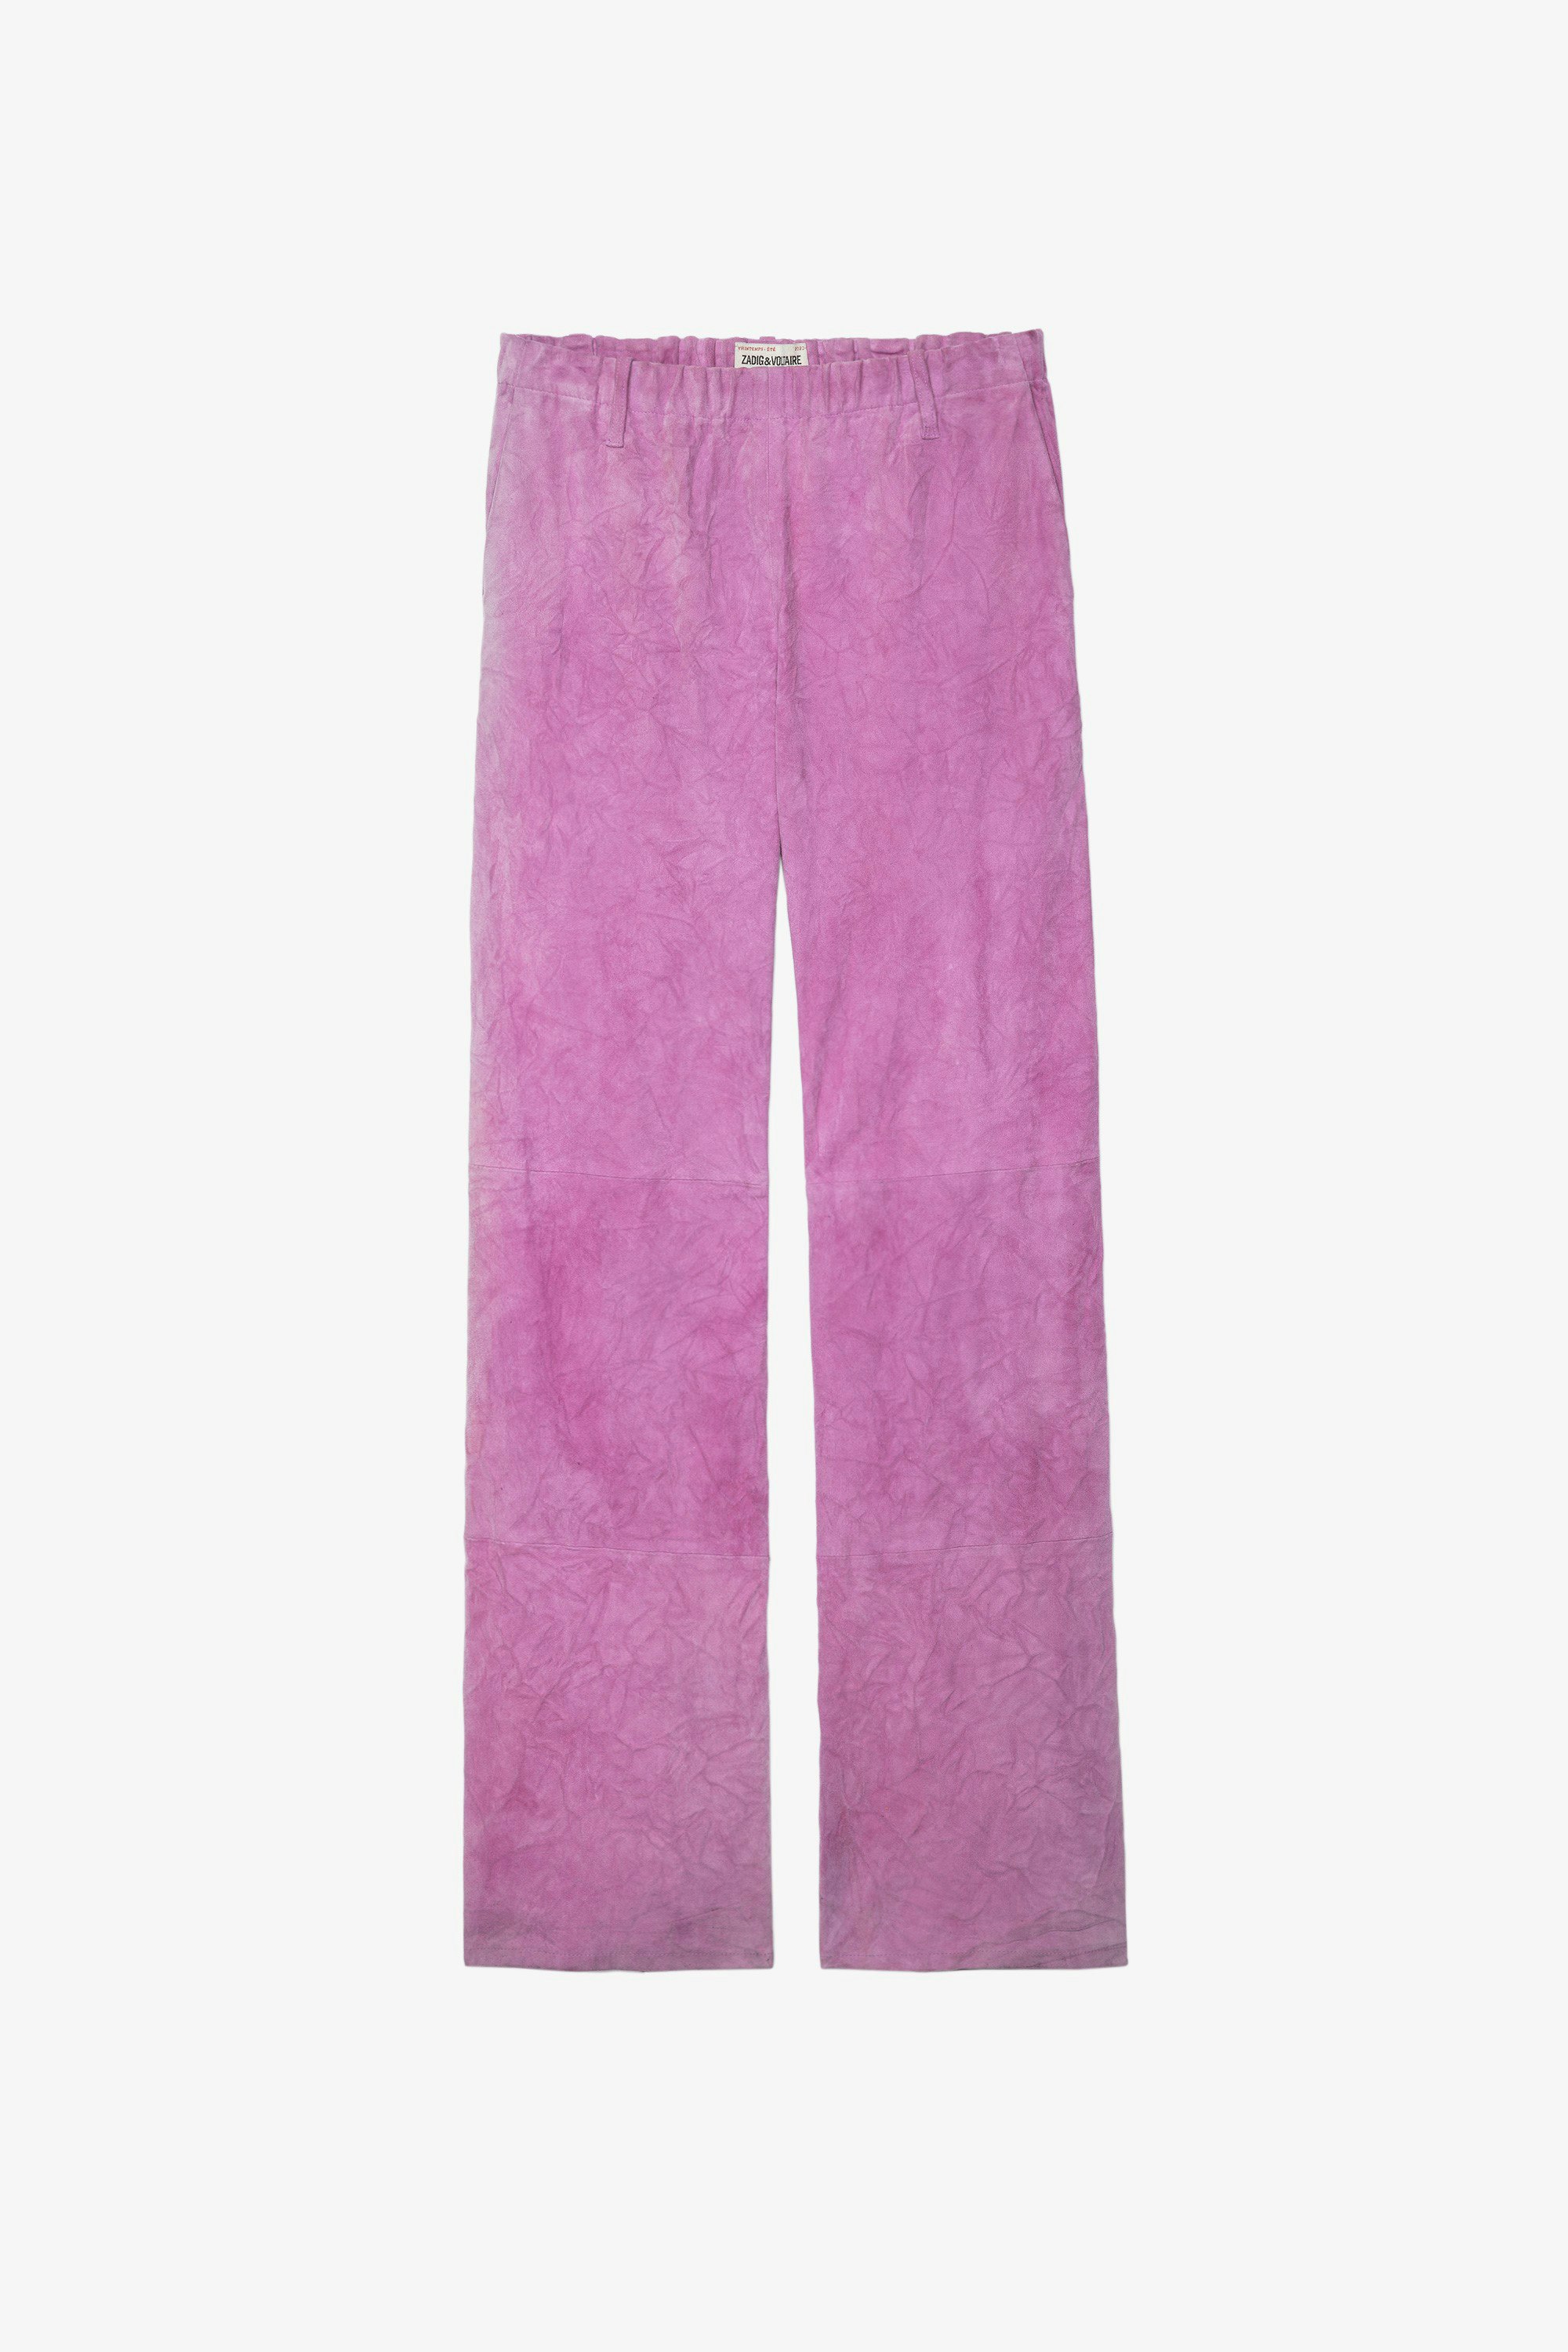 Pantalón de ante arrugado Parfait Pantalón holgado en ante arrugado rosa para mujer